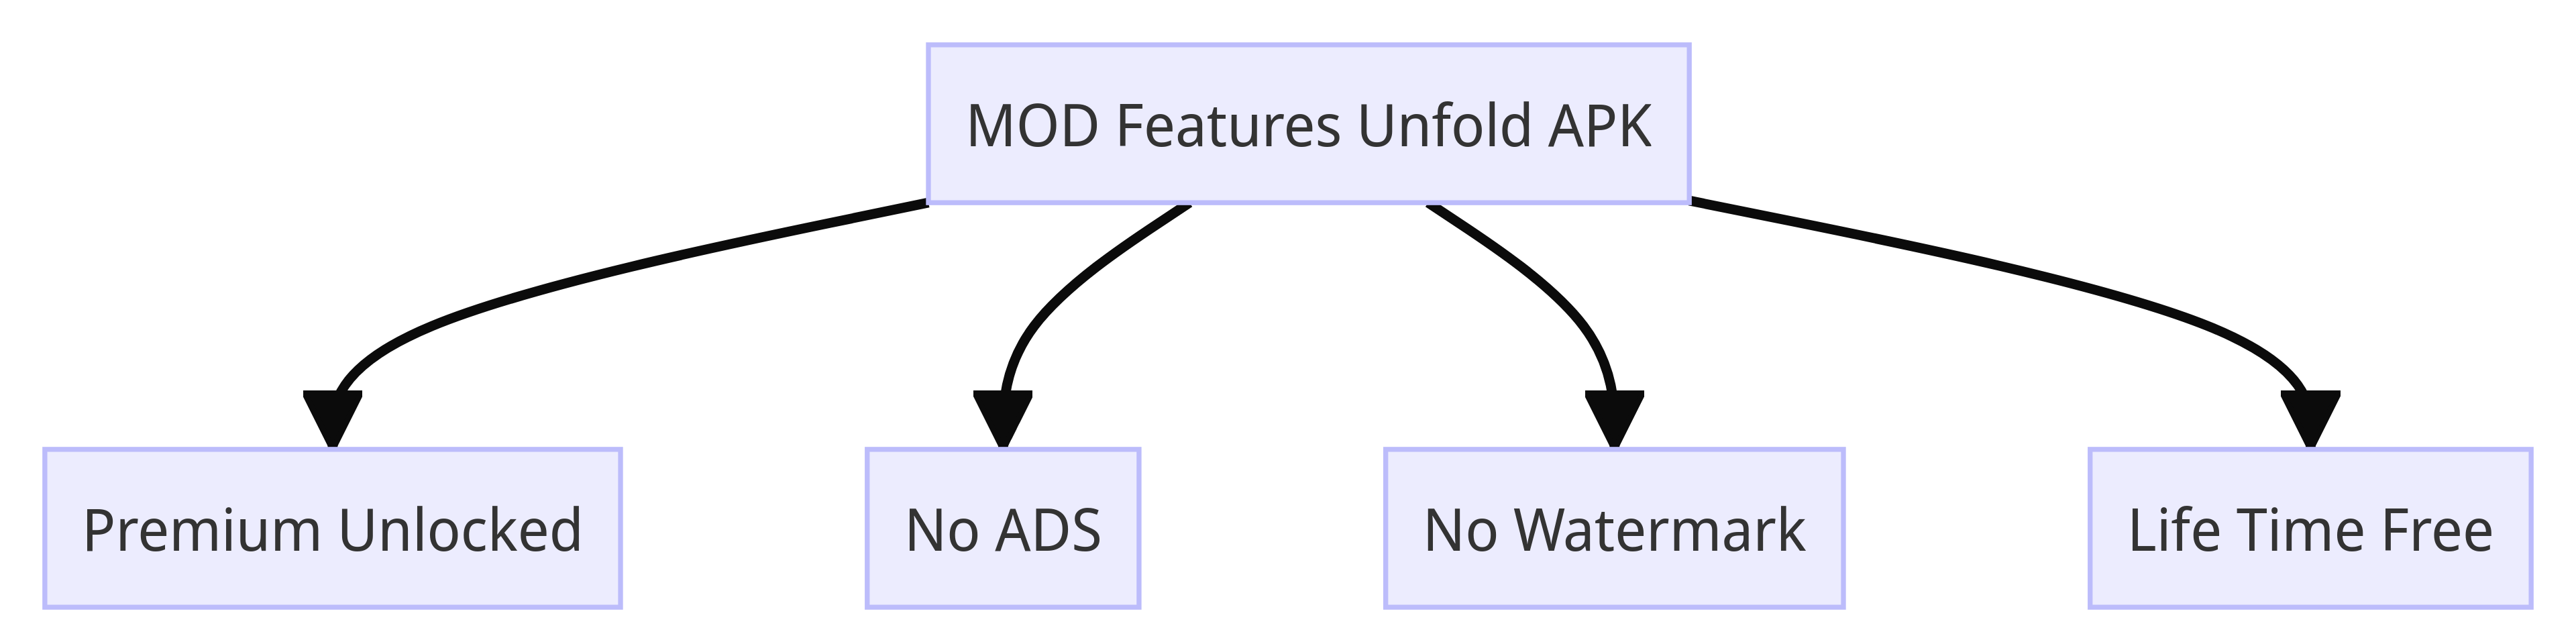 MOD Features Unfold APK